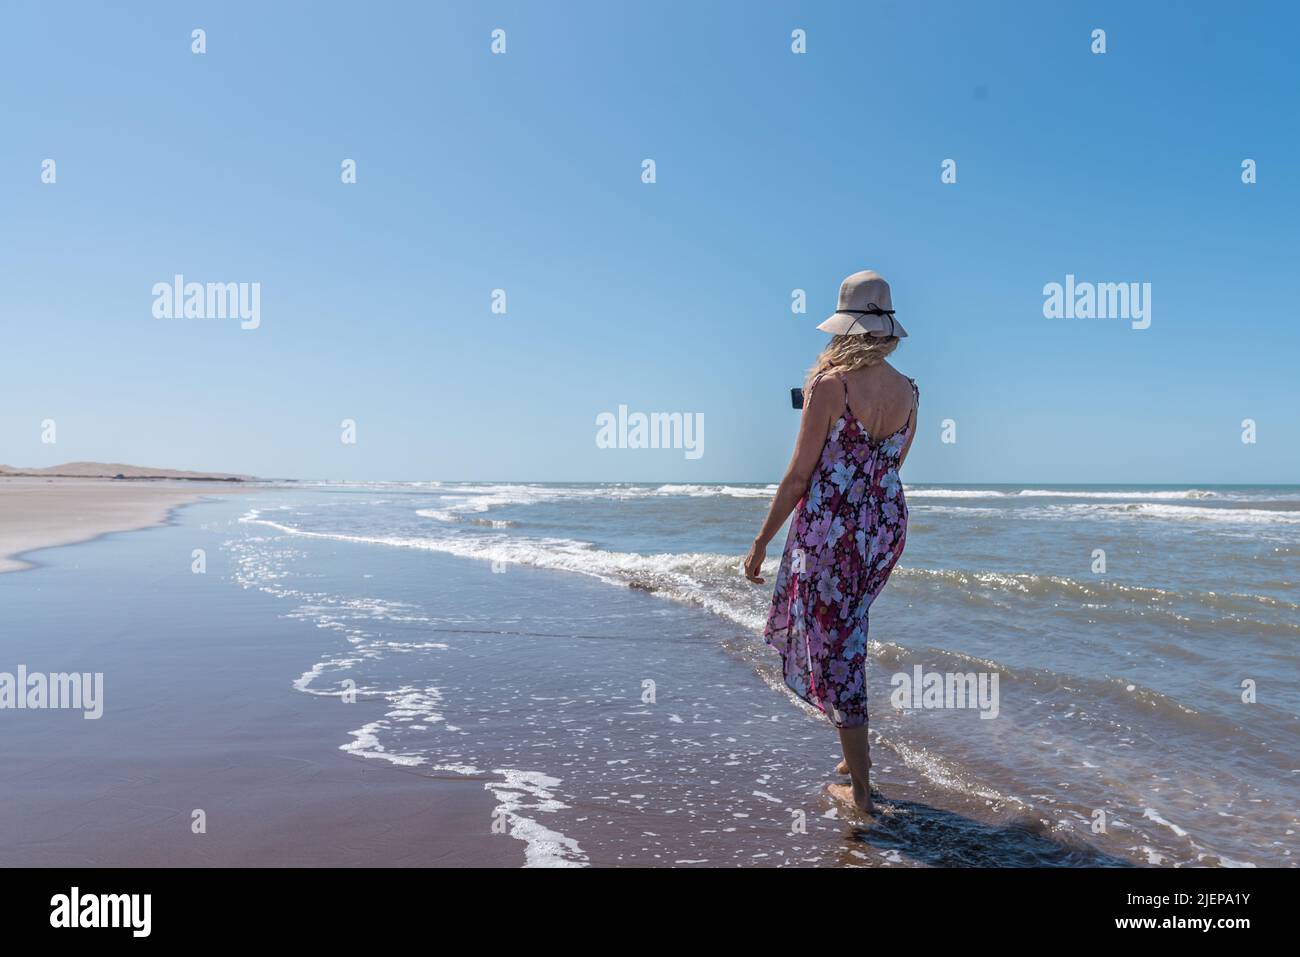 Frau in Sommerkleidung, die barfuß an einem windigen Strand entlang schlendert und mit einem Stockfoto